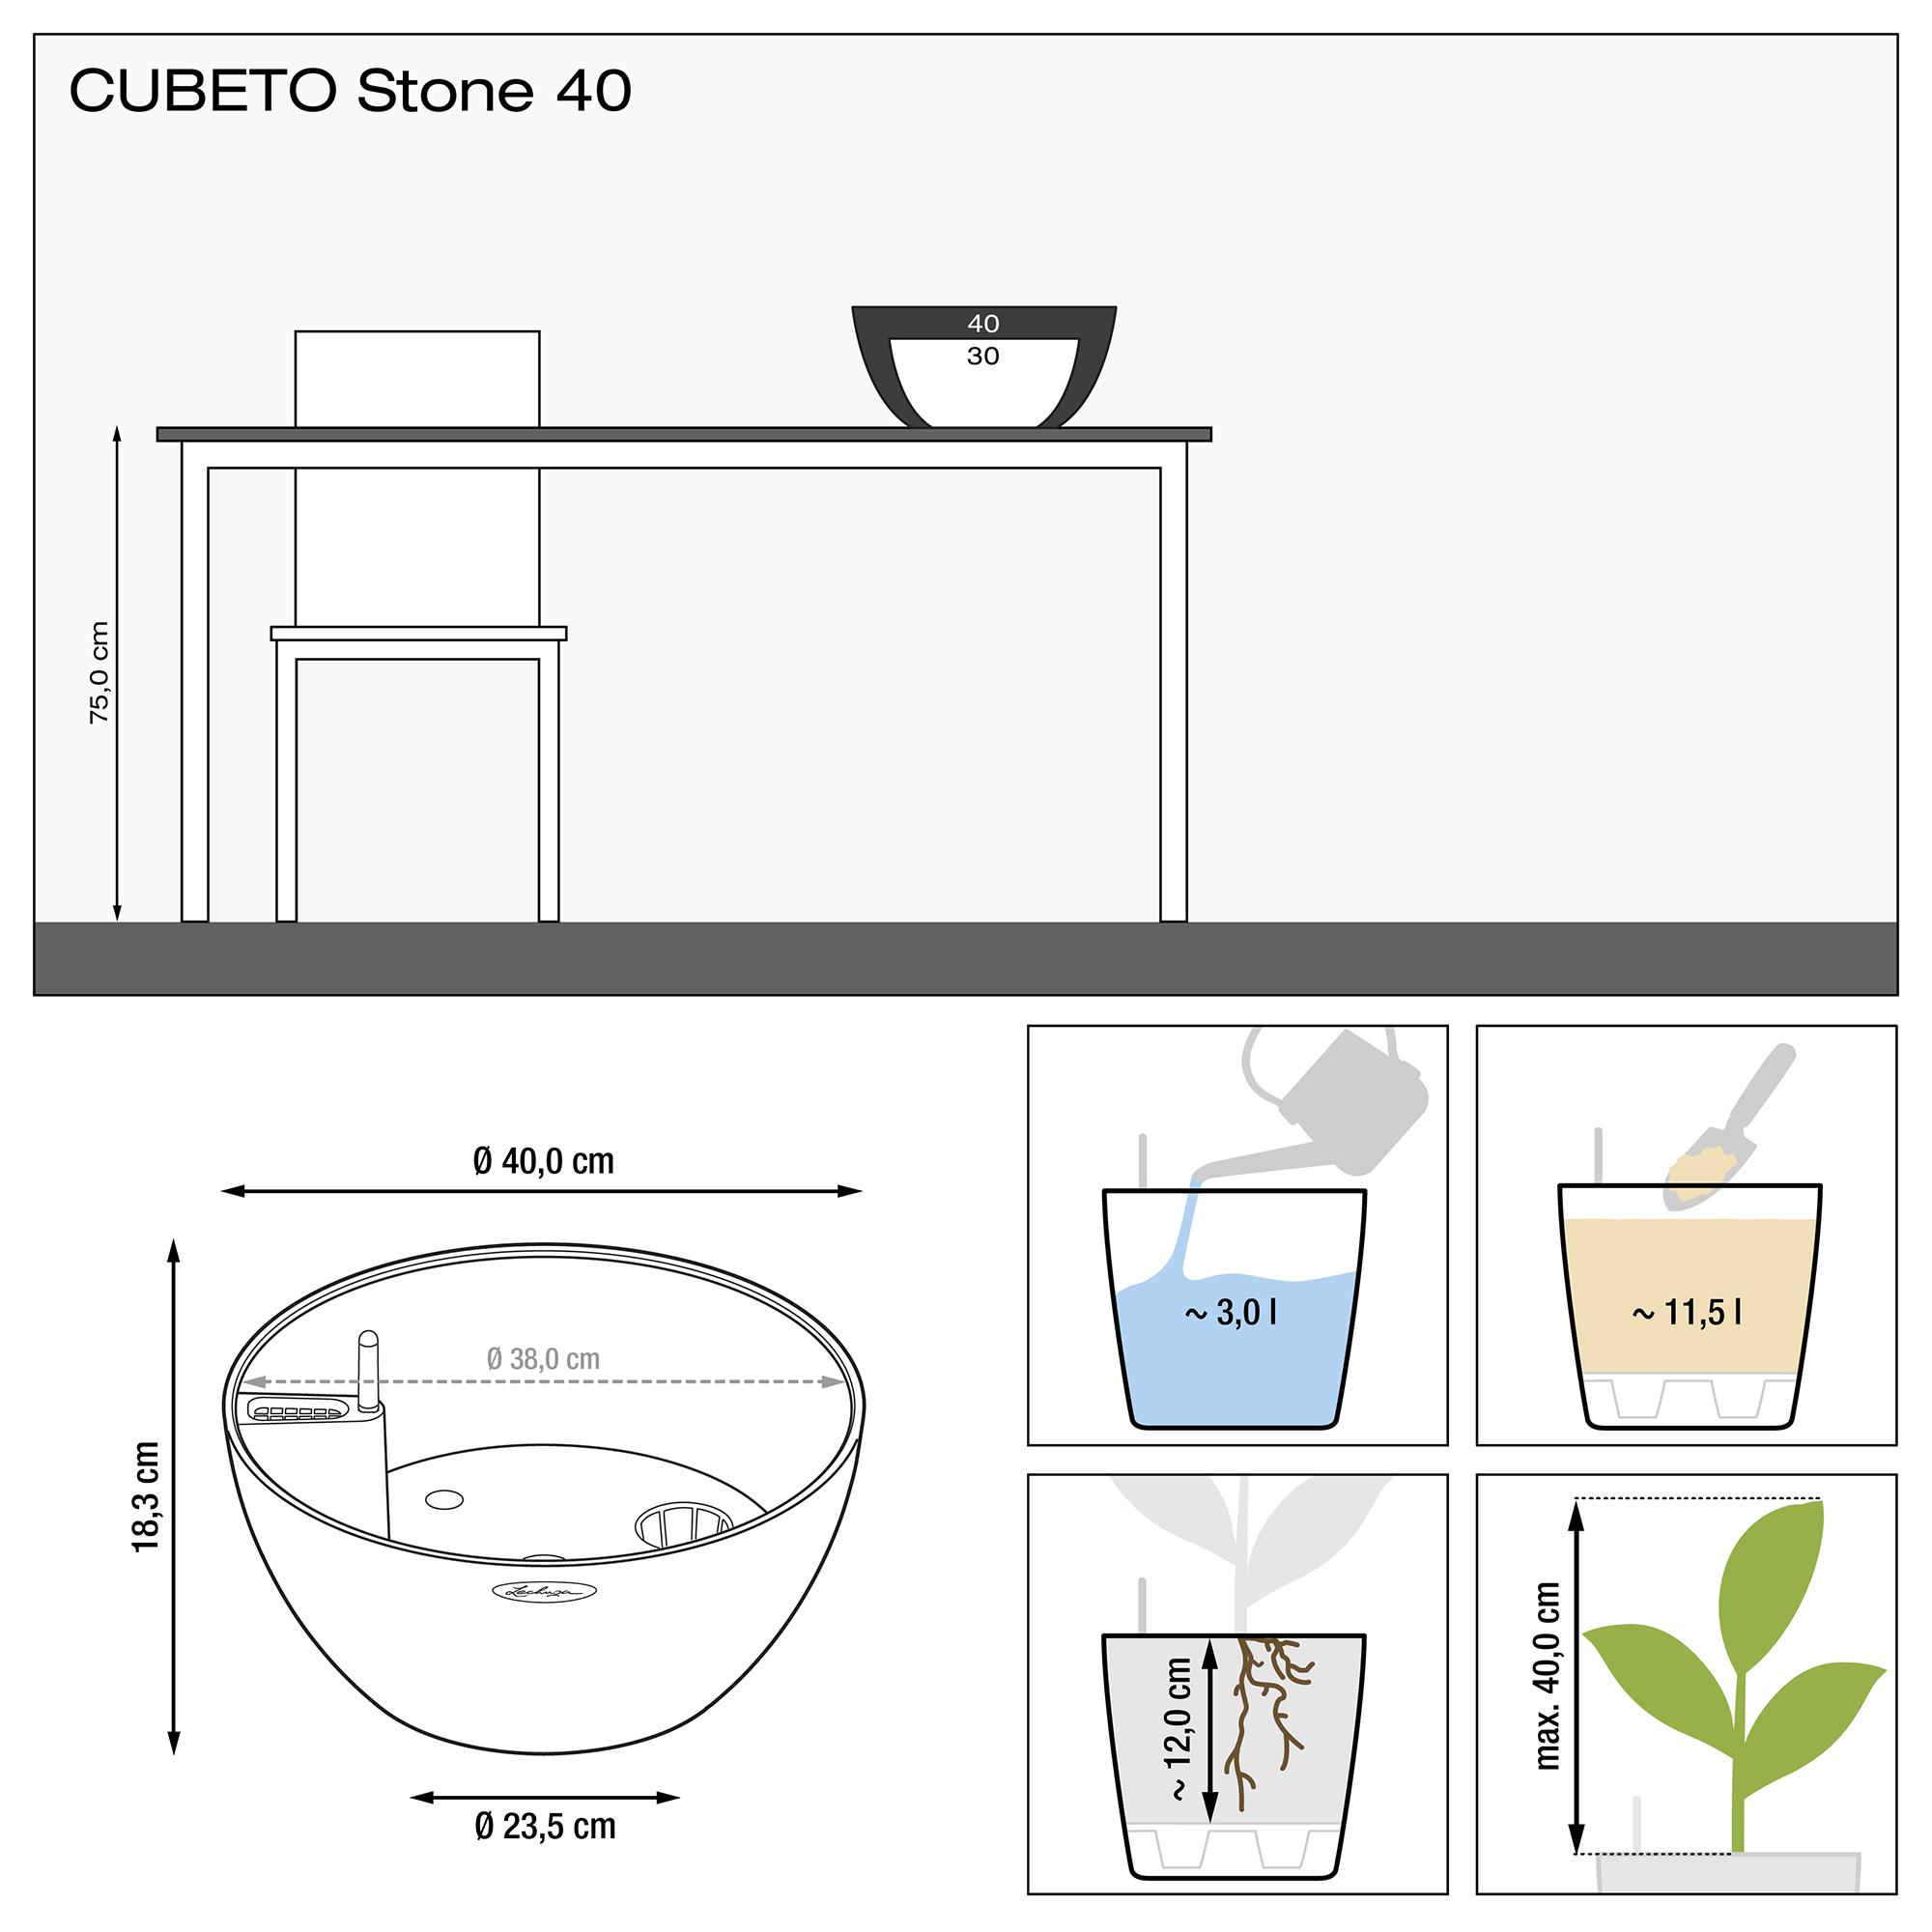 le_cubeto-stone40_product_addi_nz Thumb